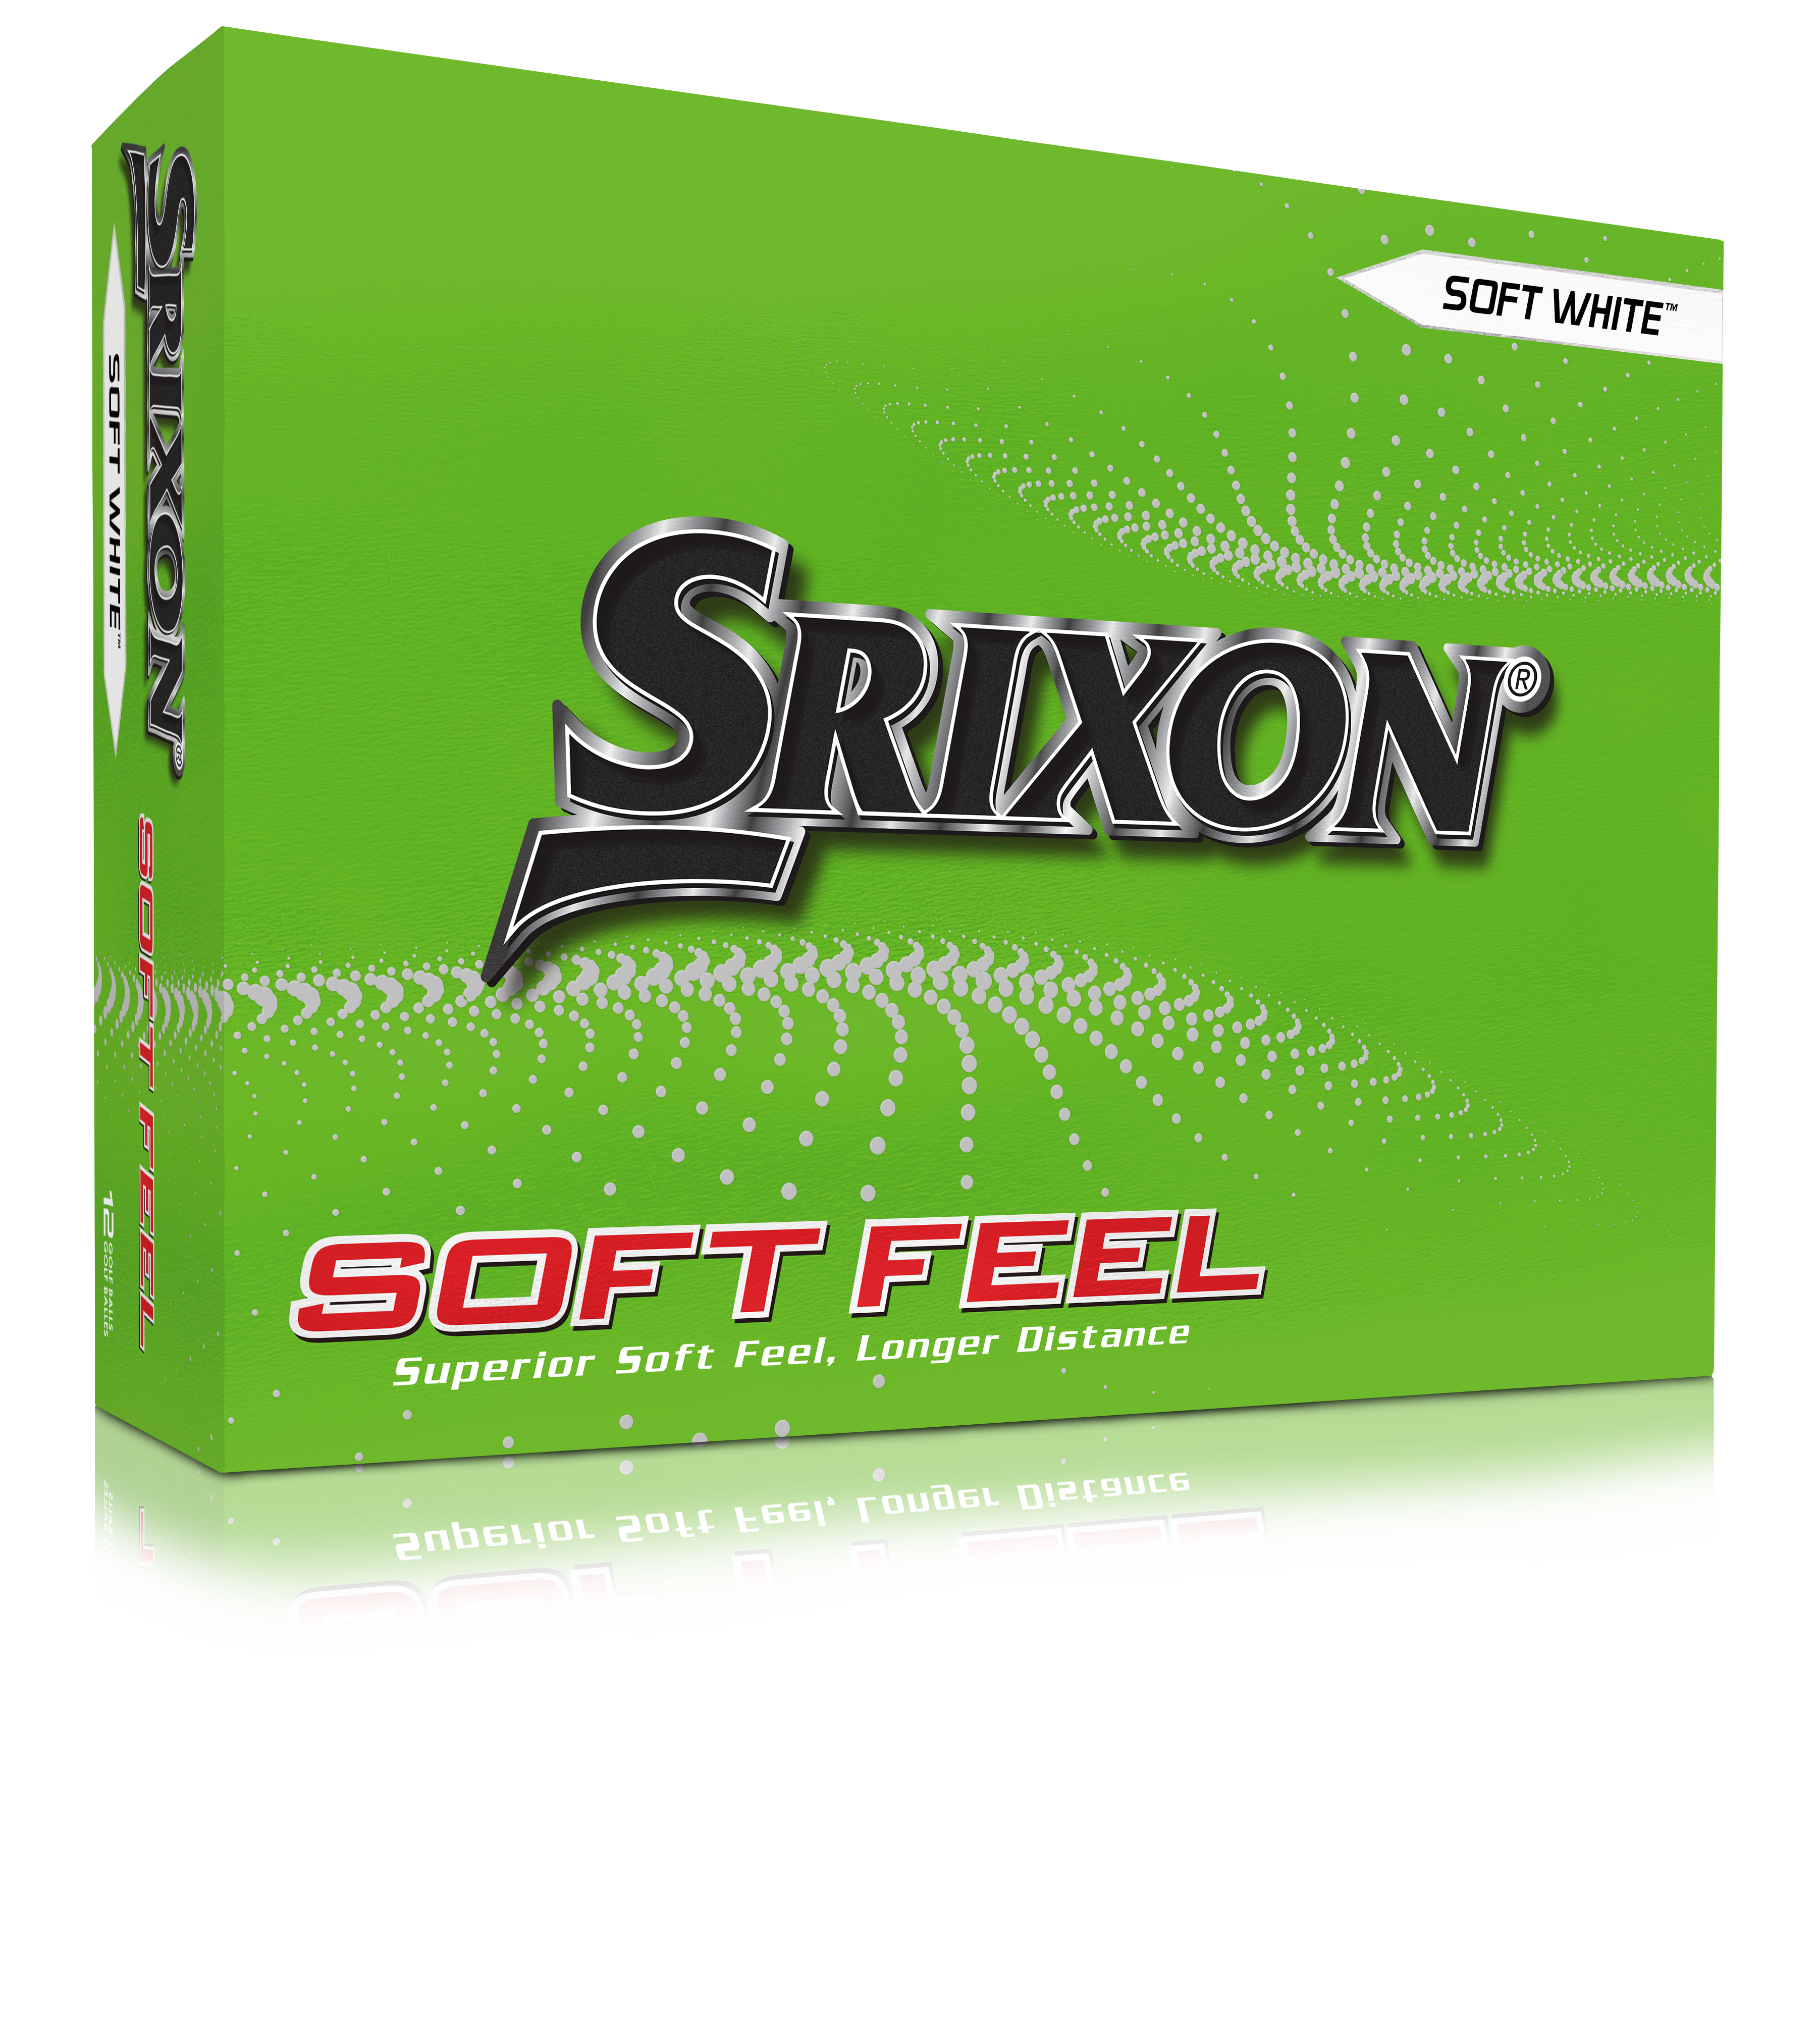 Srixon Soft Feel 12 Golf Ball - Plain